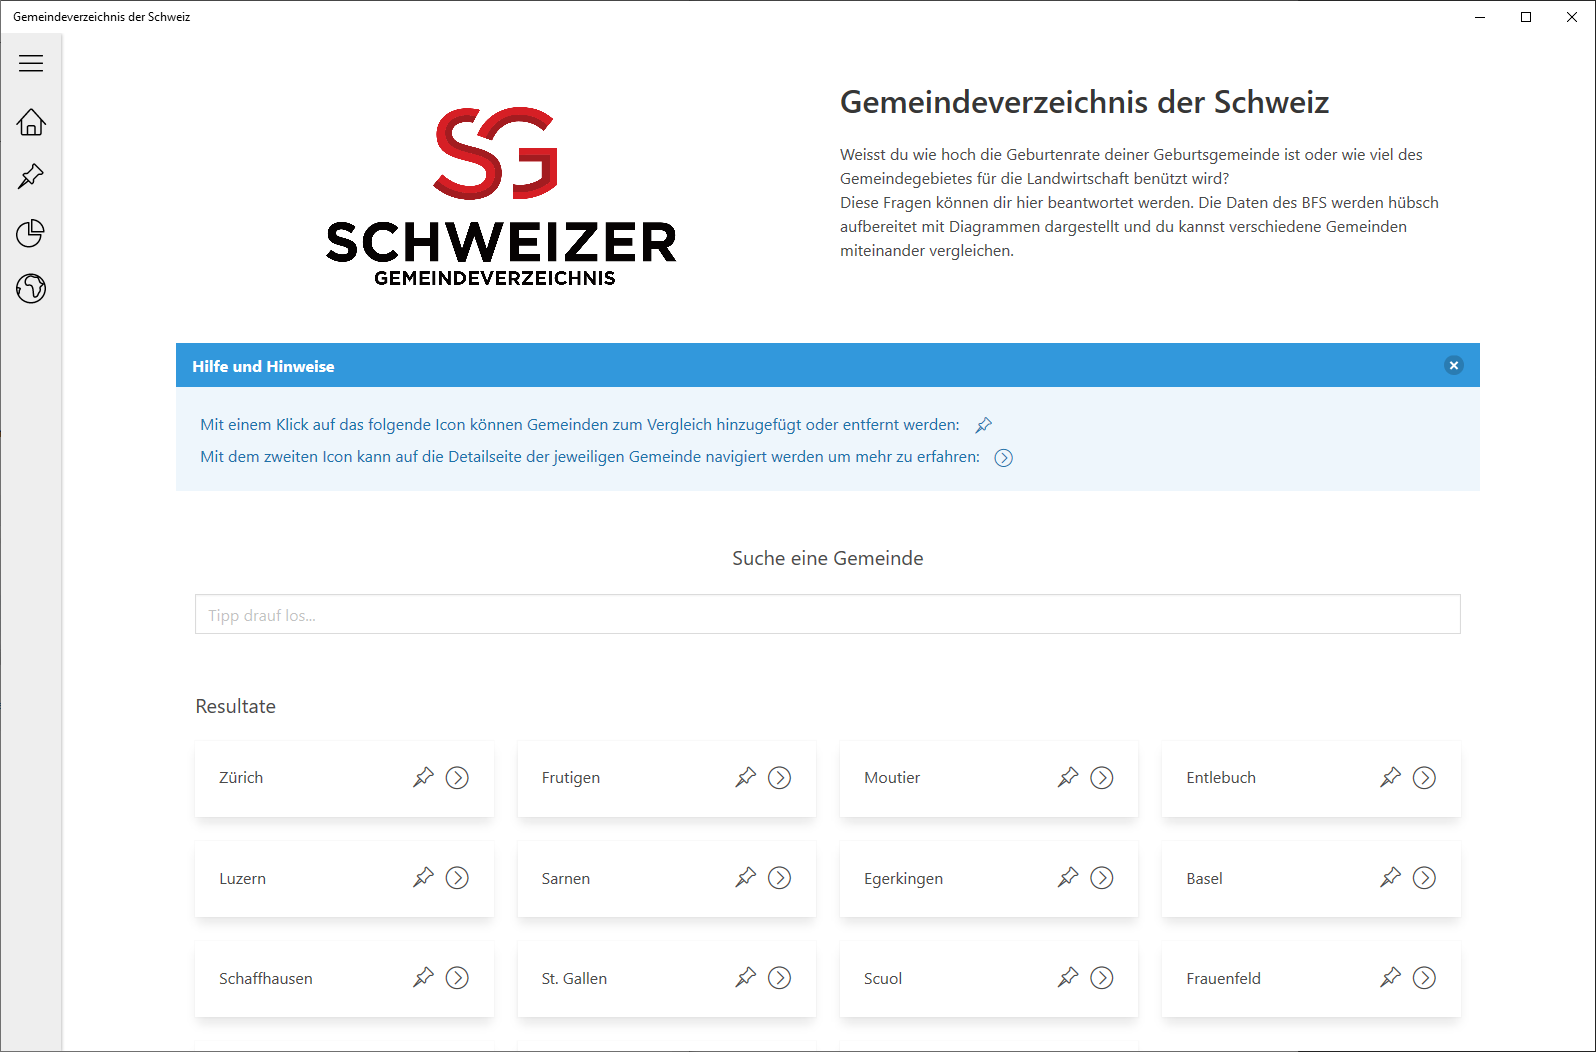 Gemeindeverzeichnis der Schweiz